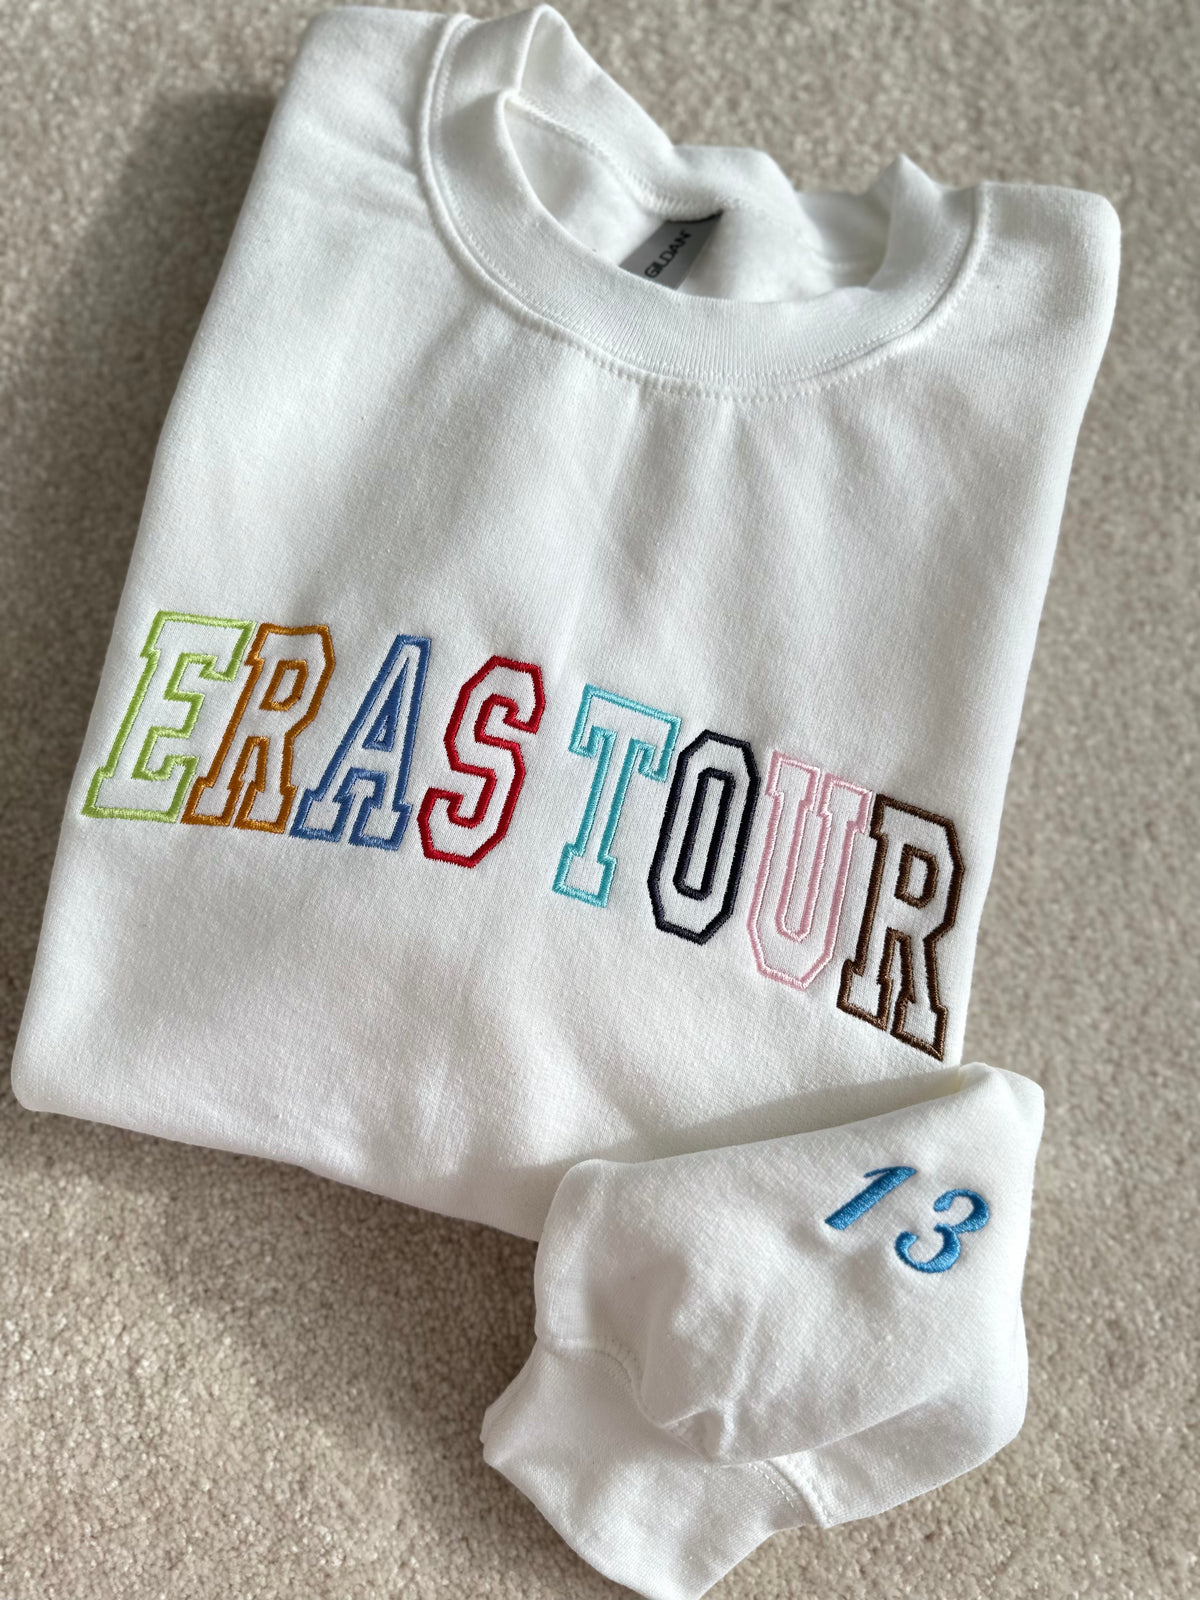 ERAS TOUR Taylor's Version Embroidered Sweatshirt